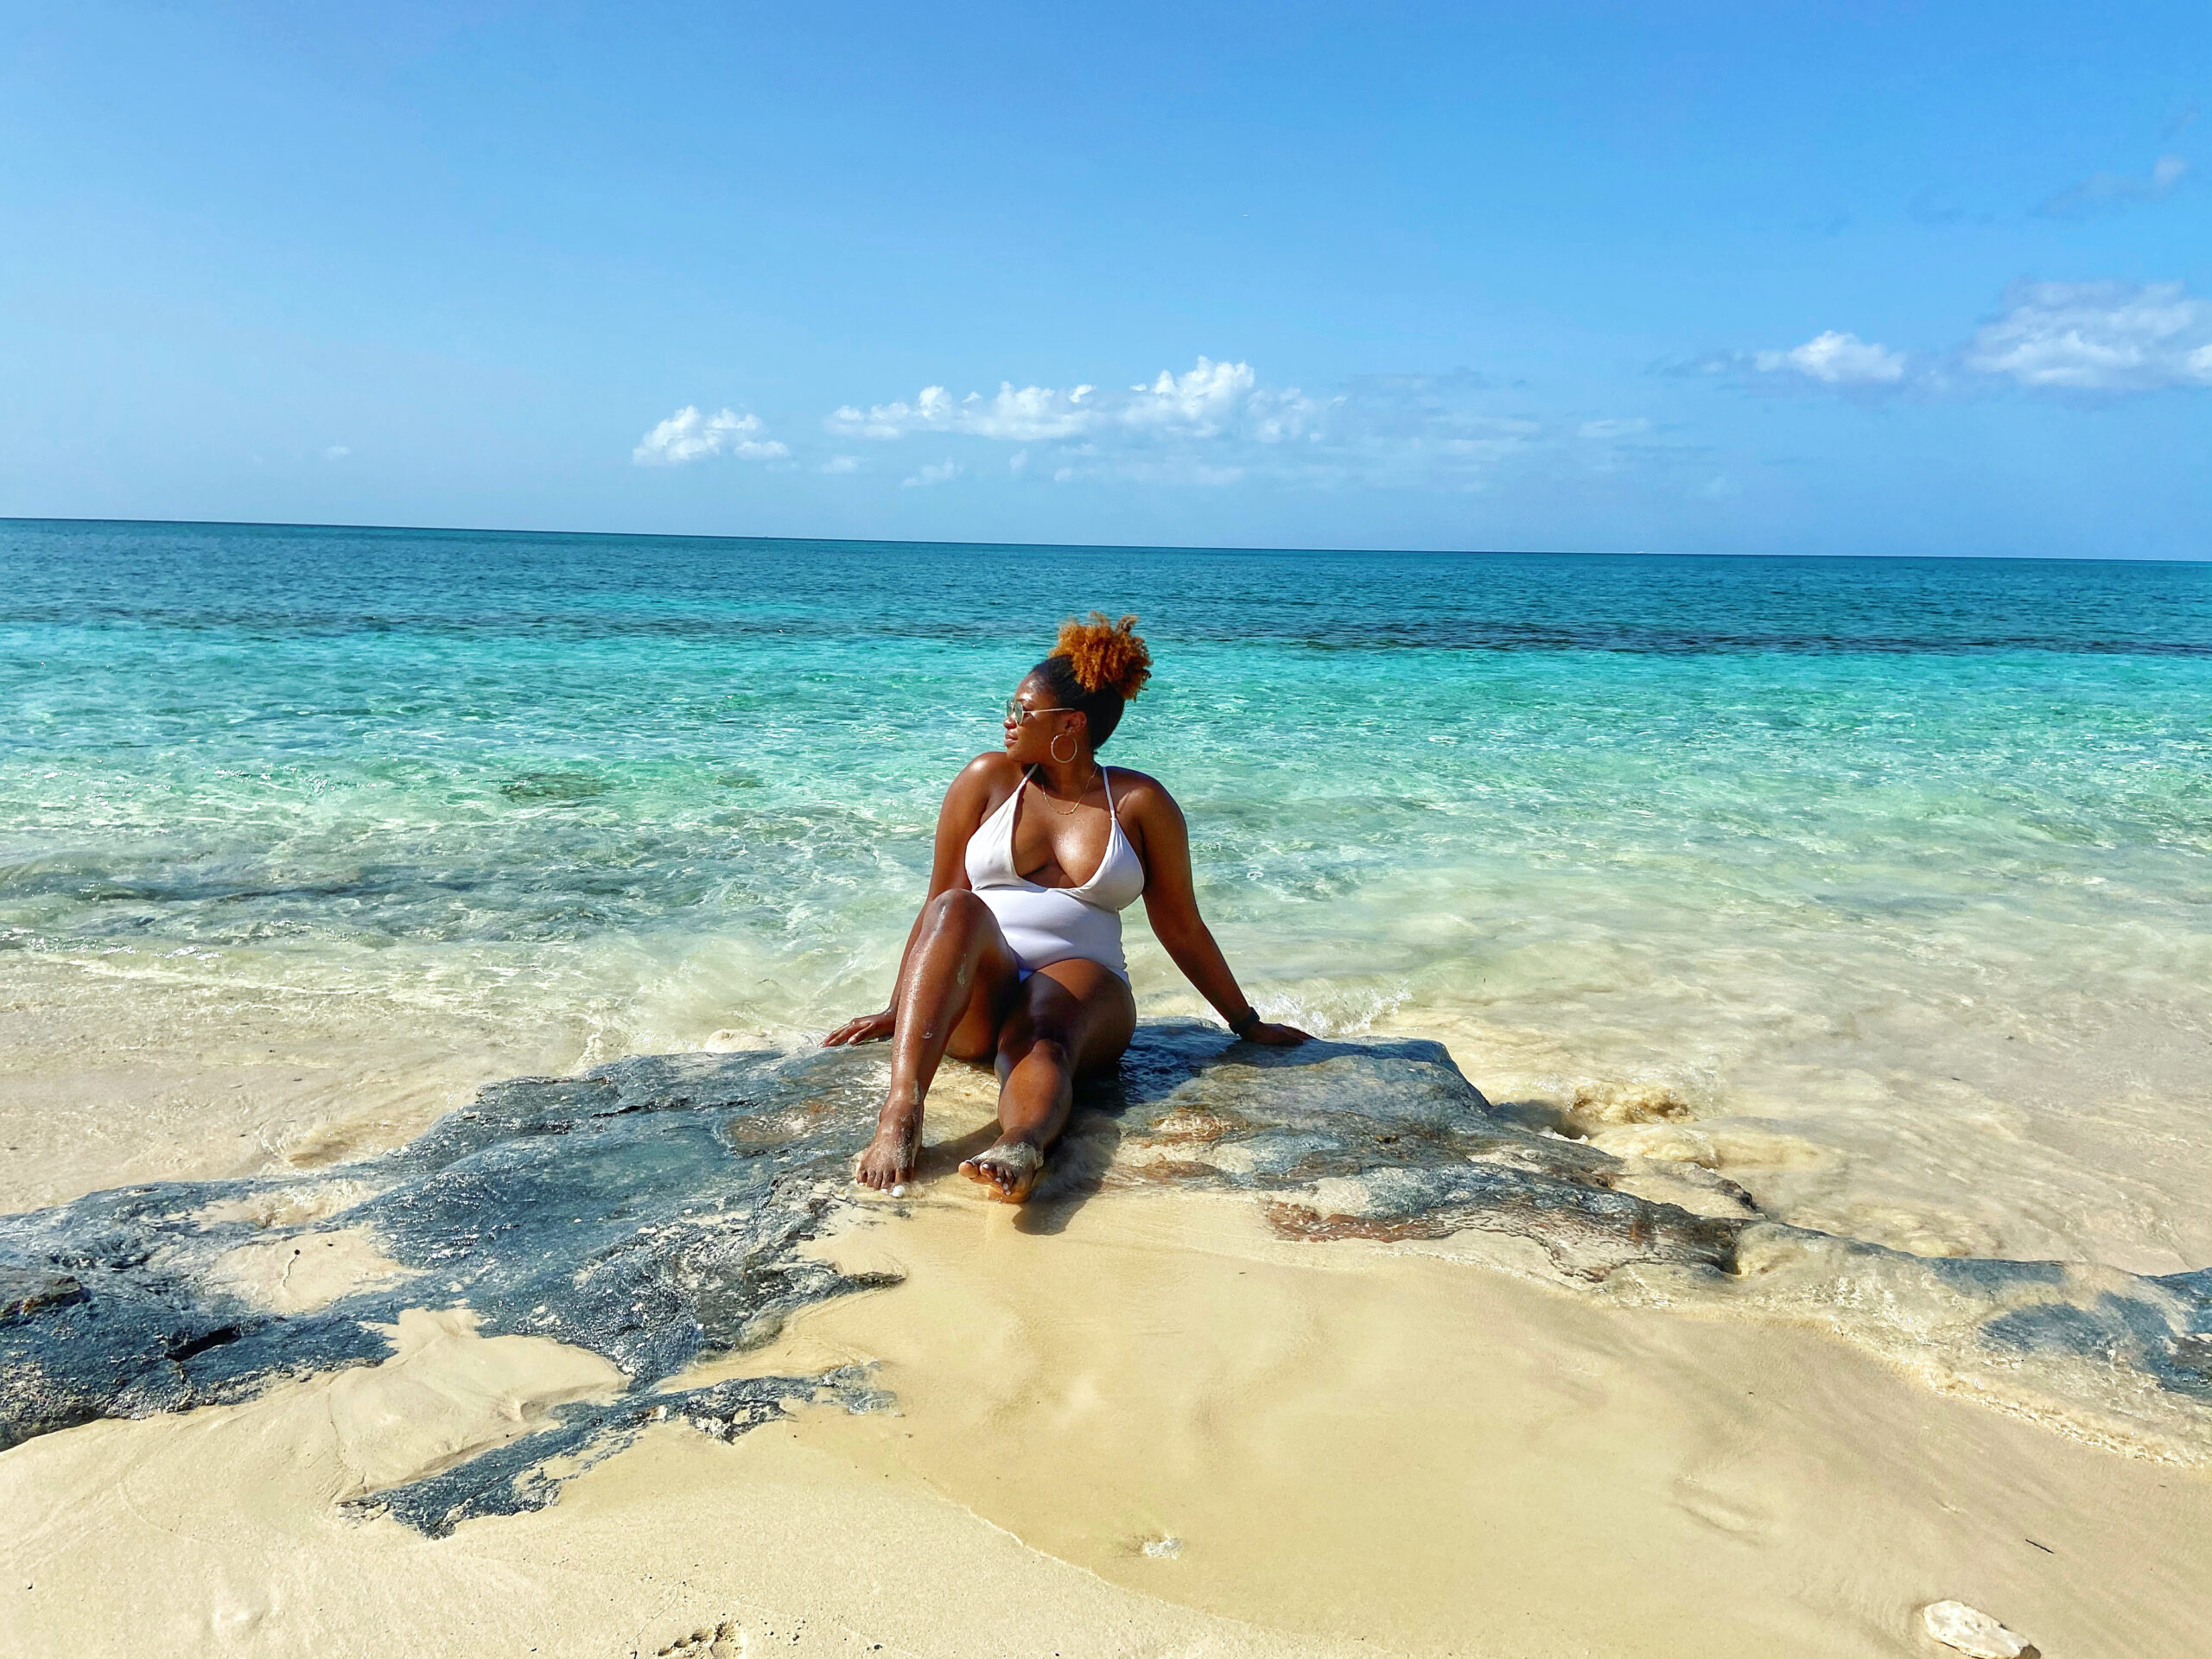 Bahamian Beach Day [FINALLY]!